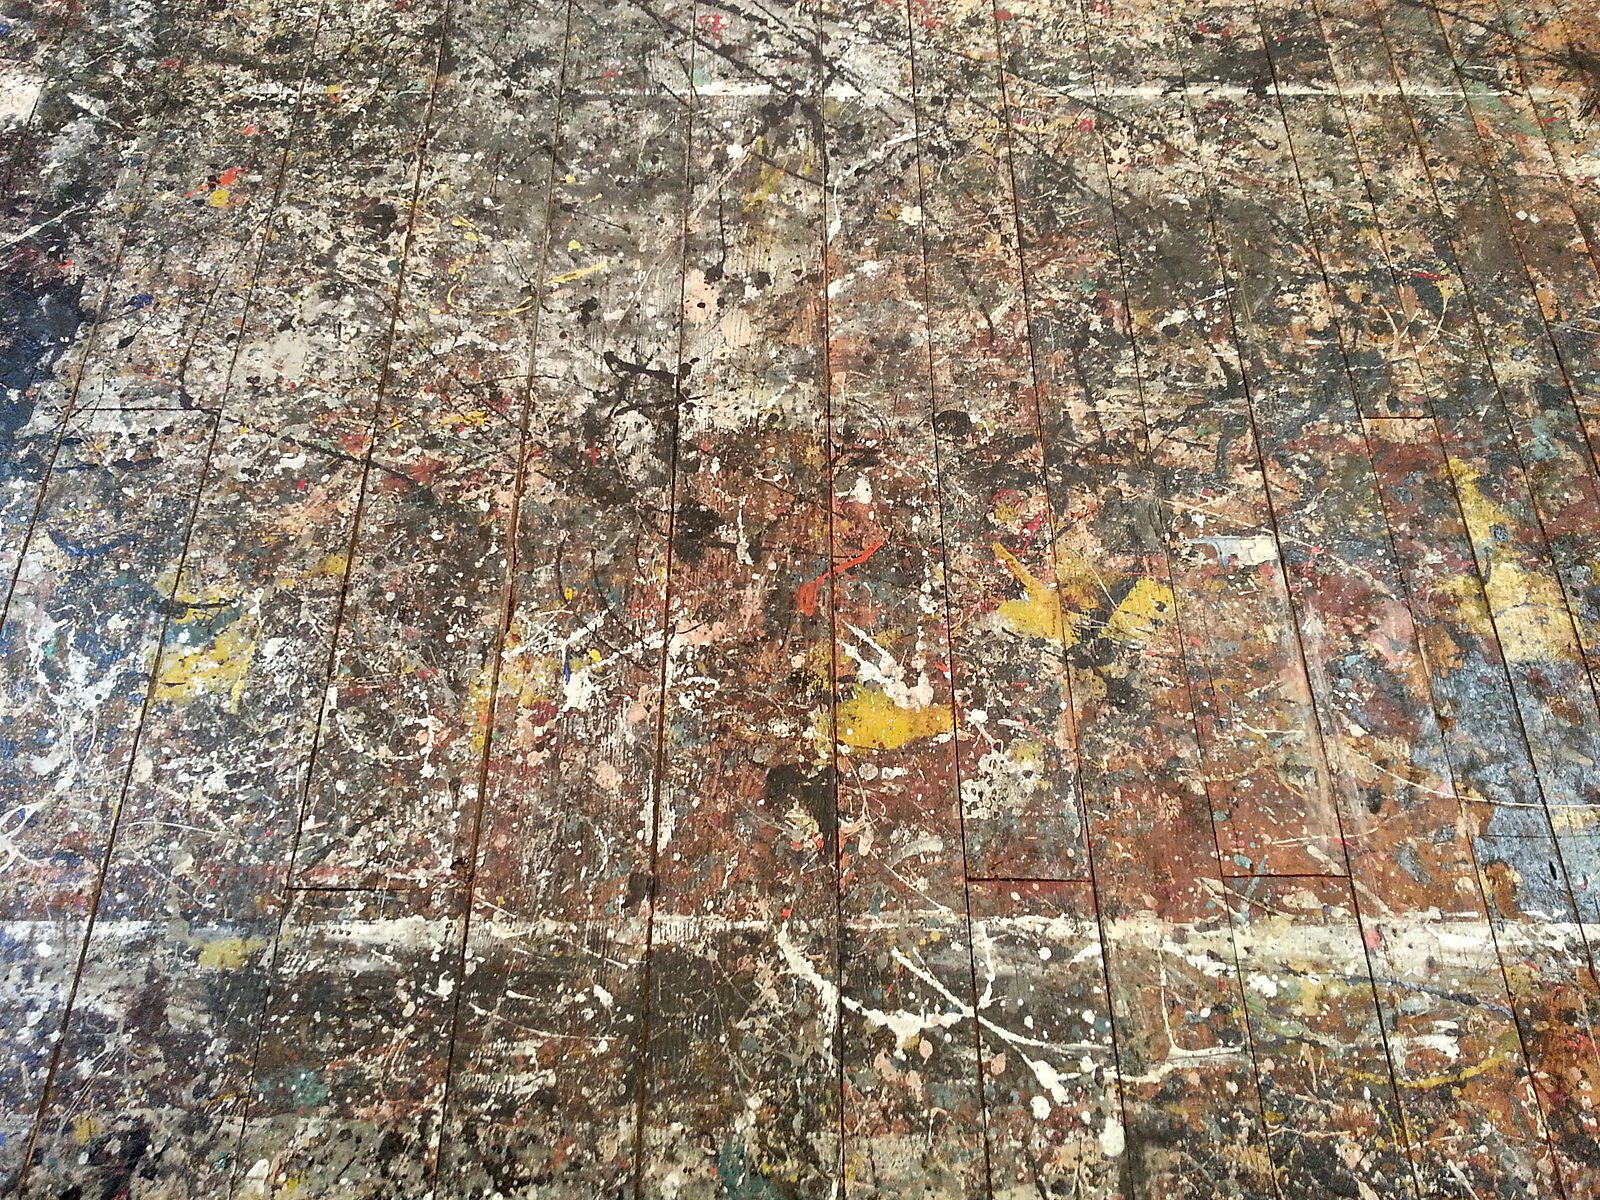 Jackson Pollock's studio floor covered in paint